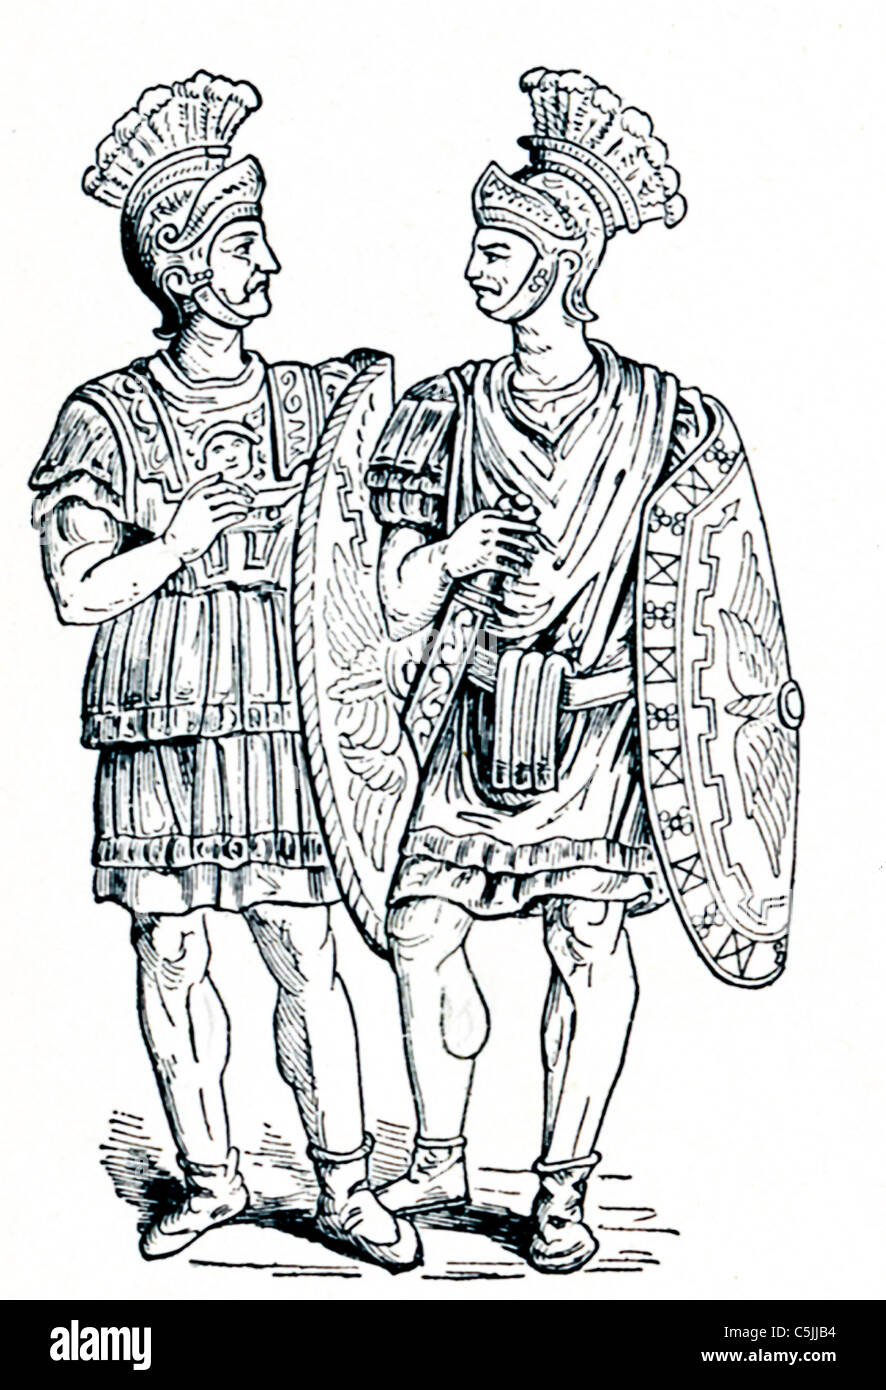 Die beiden Praetorian Wachen in dieser Abbildung 1901 abgebildet sind aus der Zeit des Augustus, der erste römische Kaiser. Stockfoto